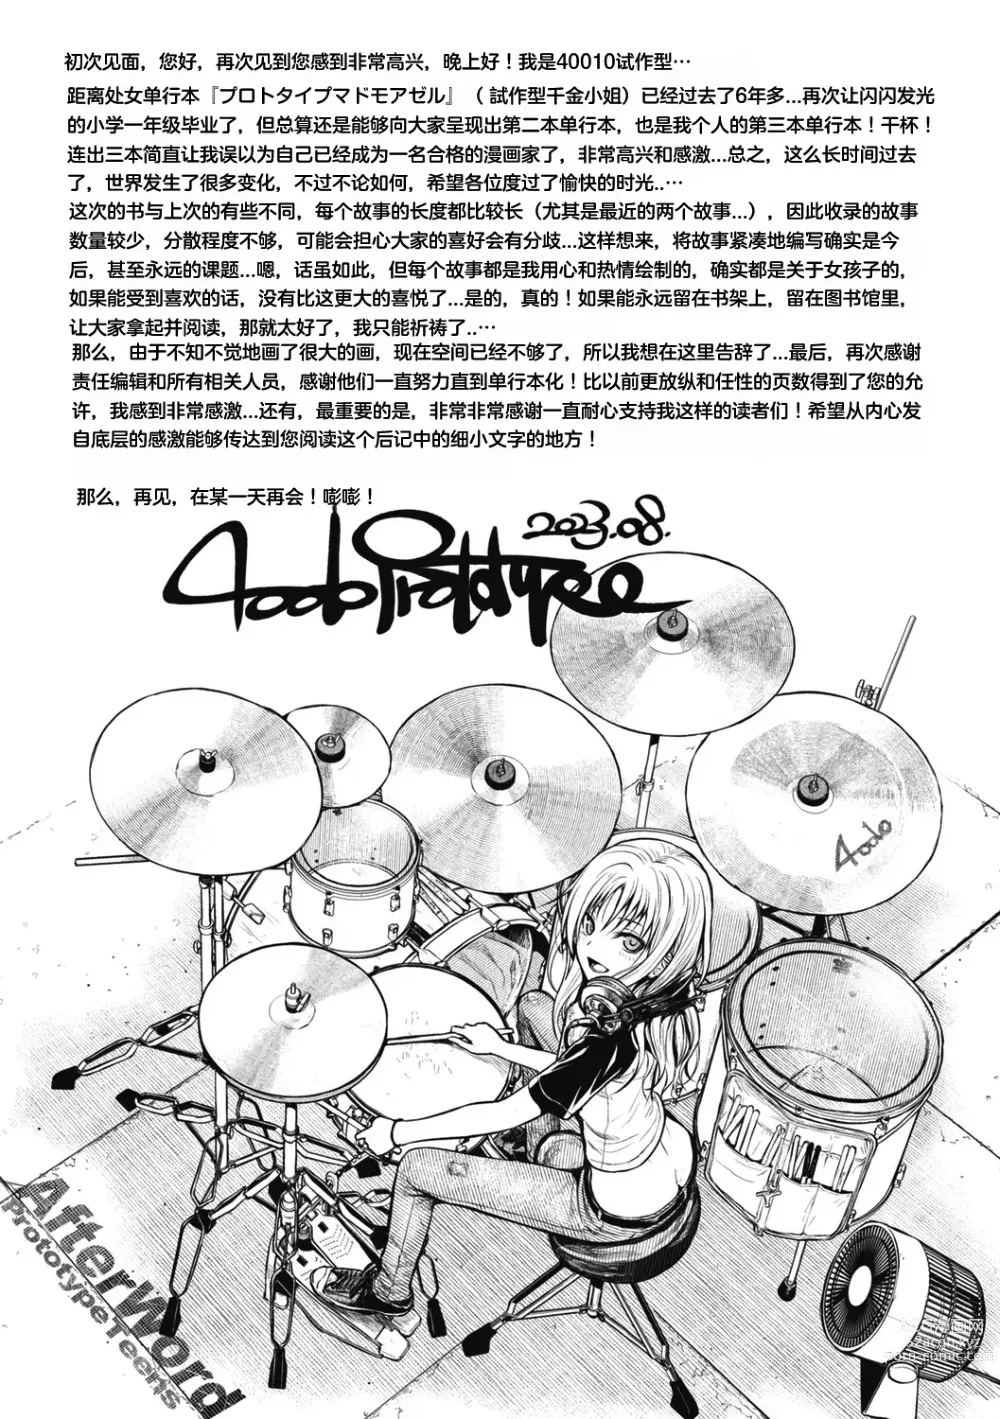 Page 192 of doujinshi プロトタイプティーンズ